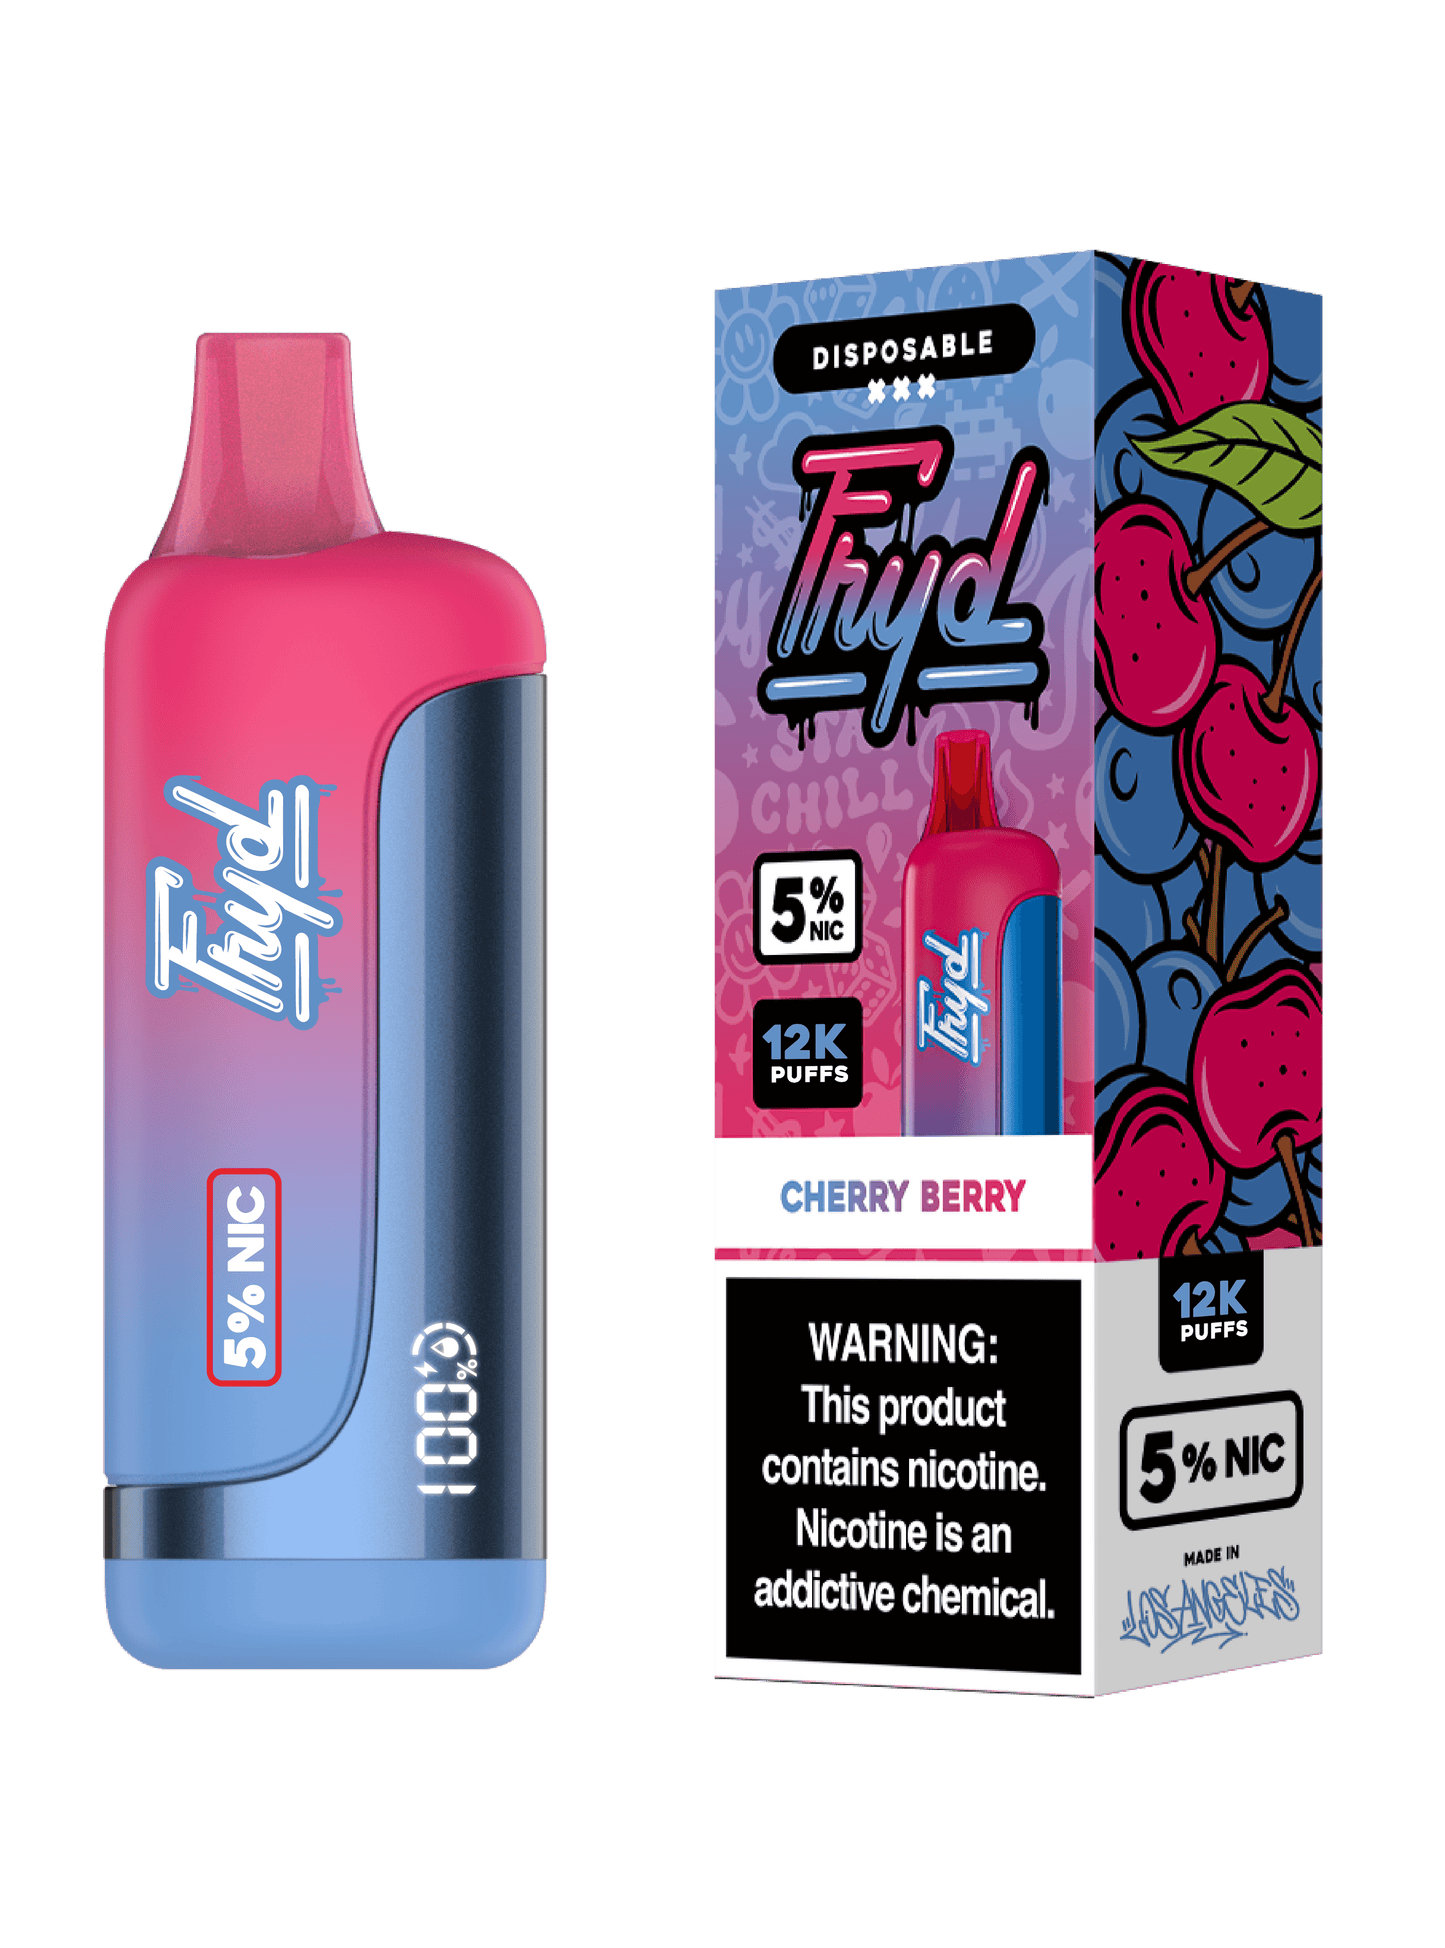 FRYD Disposable 12,000 Puffs (17mL) 50mg - Cherry Berry